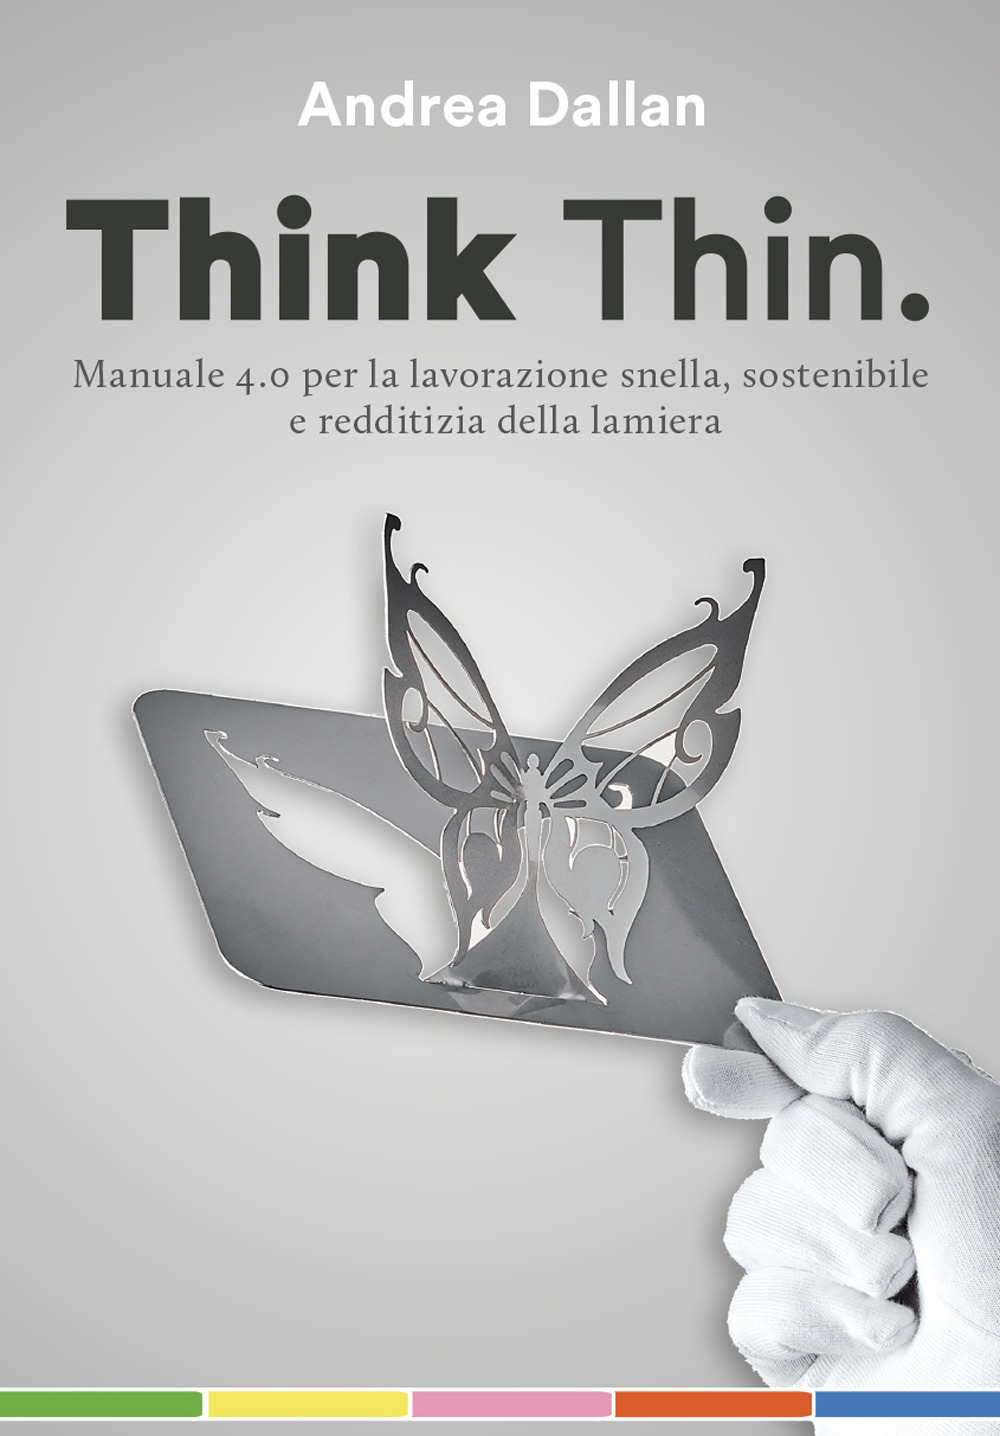 Think Thin. Manuale 4.0 per la lavorazione automatica, sostenibile e redditizia della lamiera. Ediz. integrale